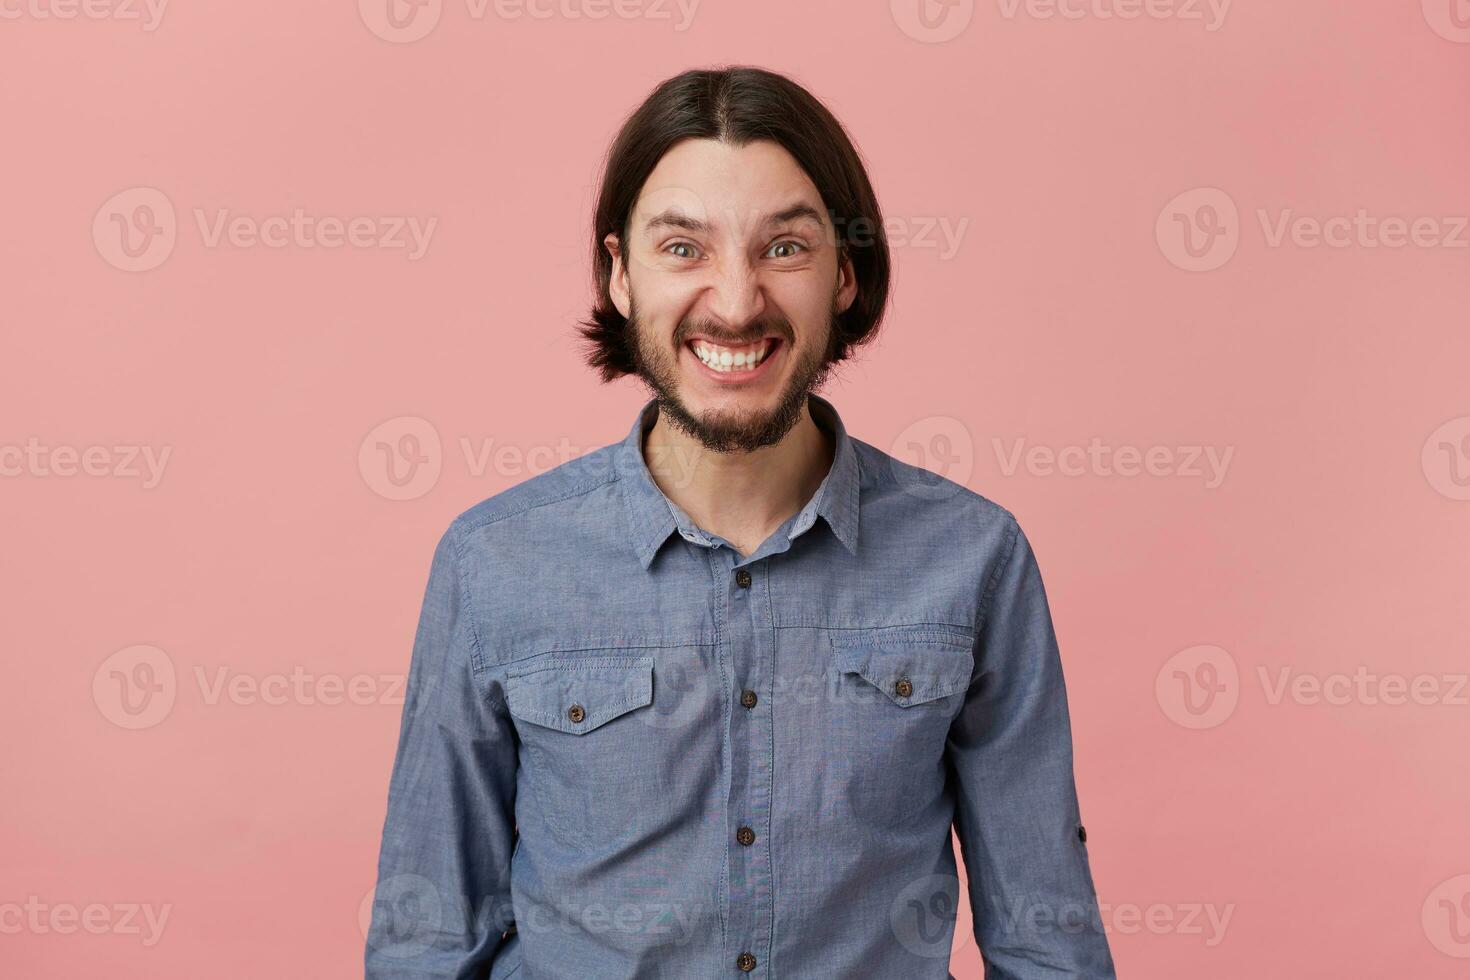 Foto av arg skäggig ung man med lång kammad mörk hår i en dålig humör, utseende arg och missnöjd isolerat över rosa bakgrund.